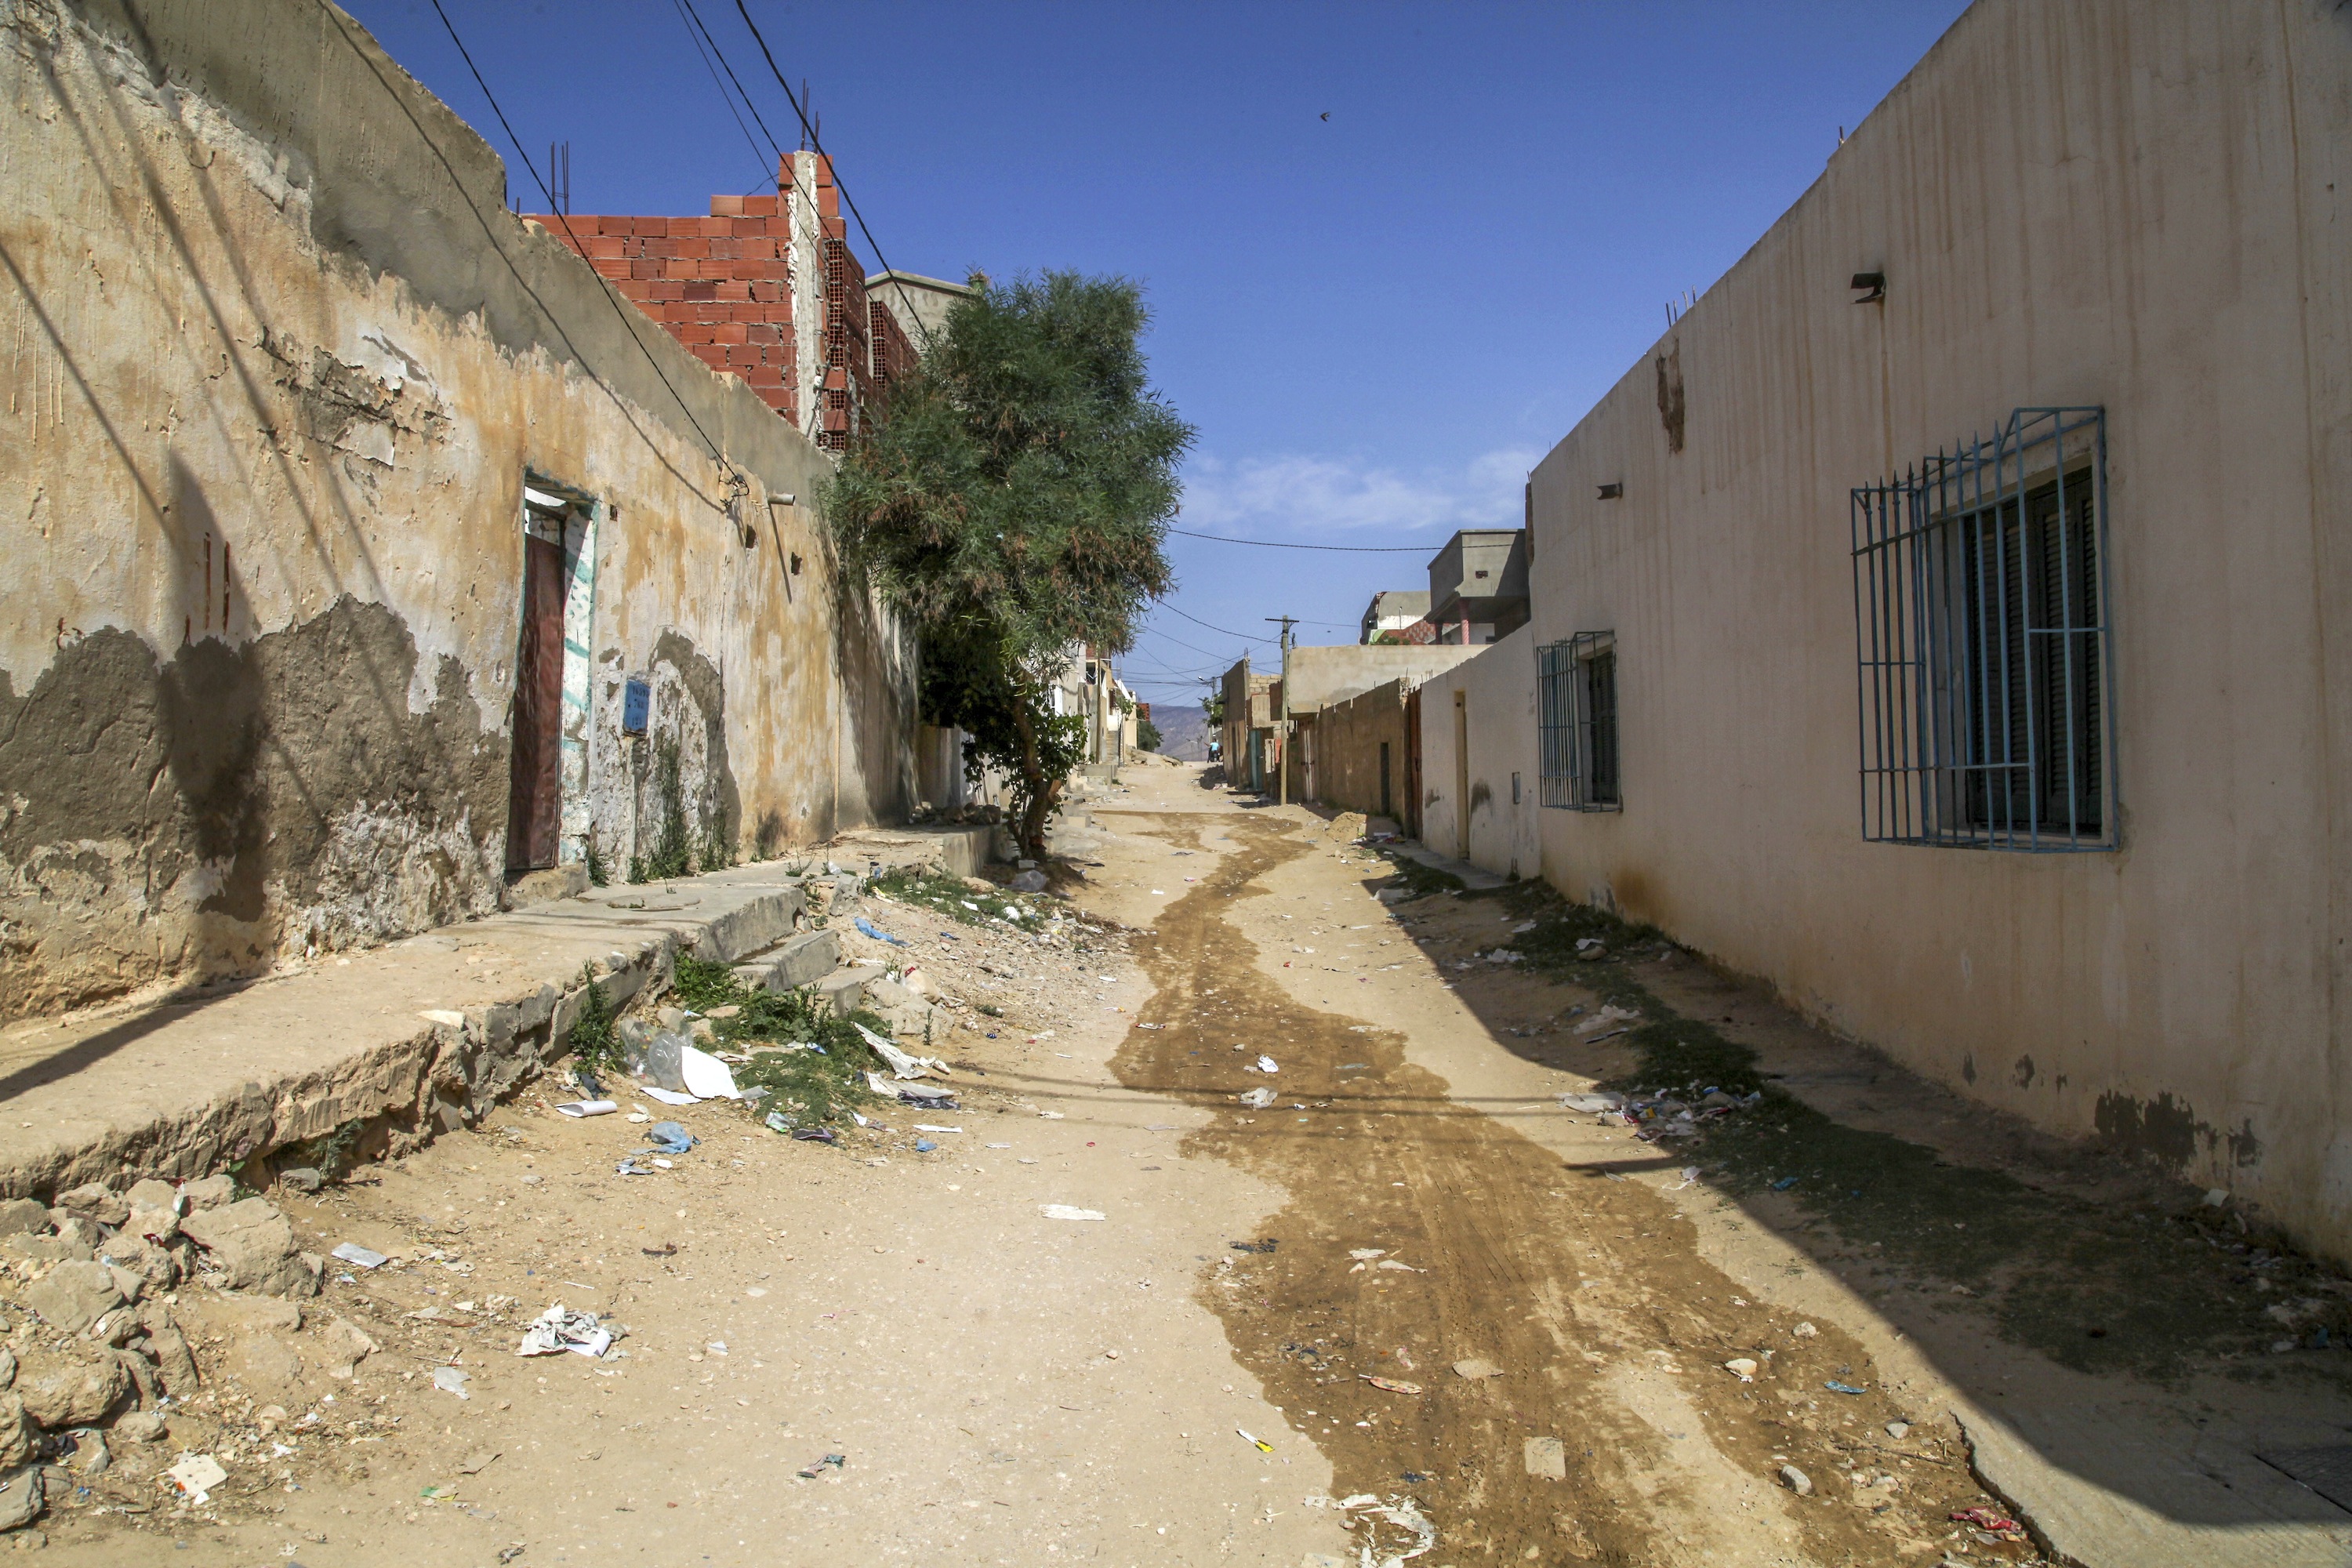 De onverharde wegen van sloppenwijk Cité Karma leiden naar de bergen waar al-Qaeda zit. (c) Baram Maaruf